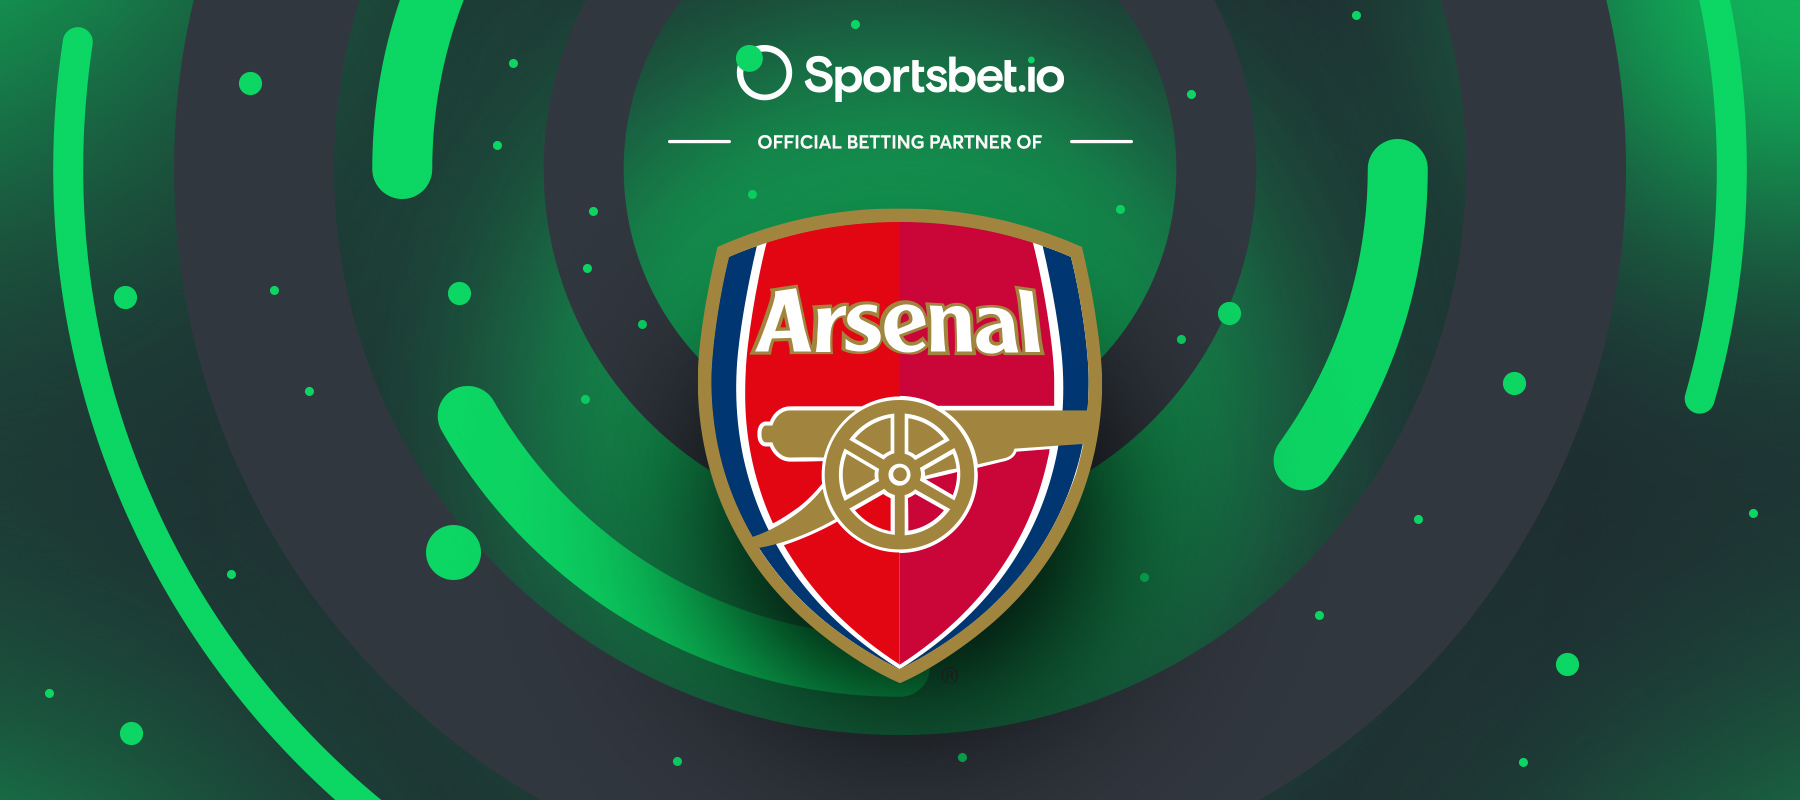 Sportsbet.io’s prestigious partnership with Arsenal